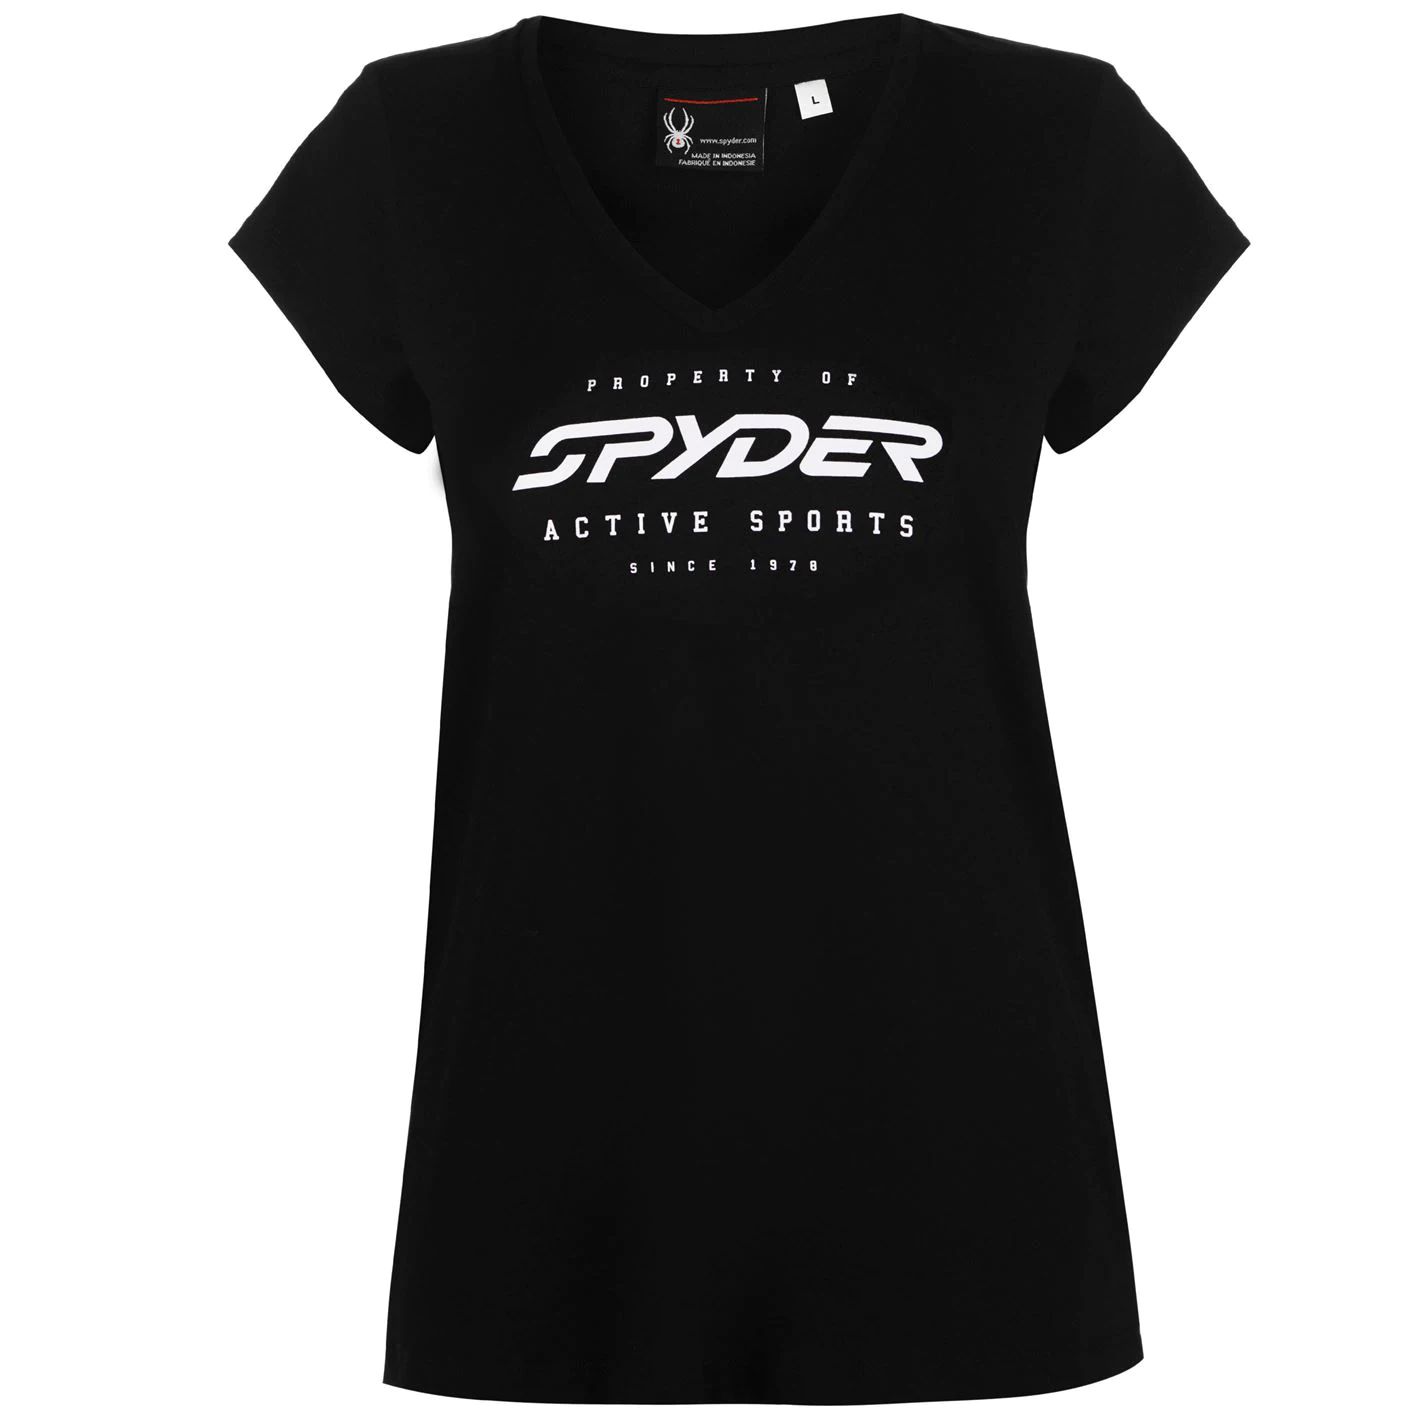 dámské tričko SPYDER - BLACK - L